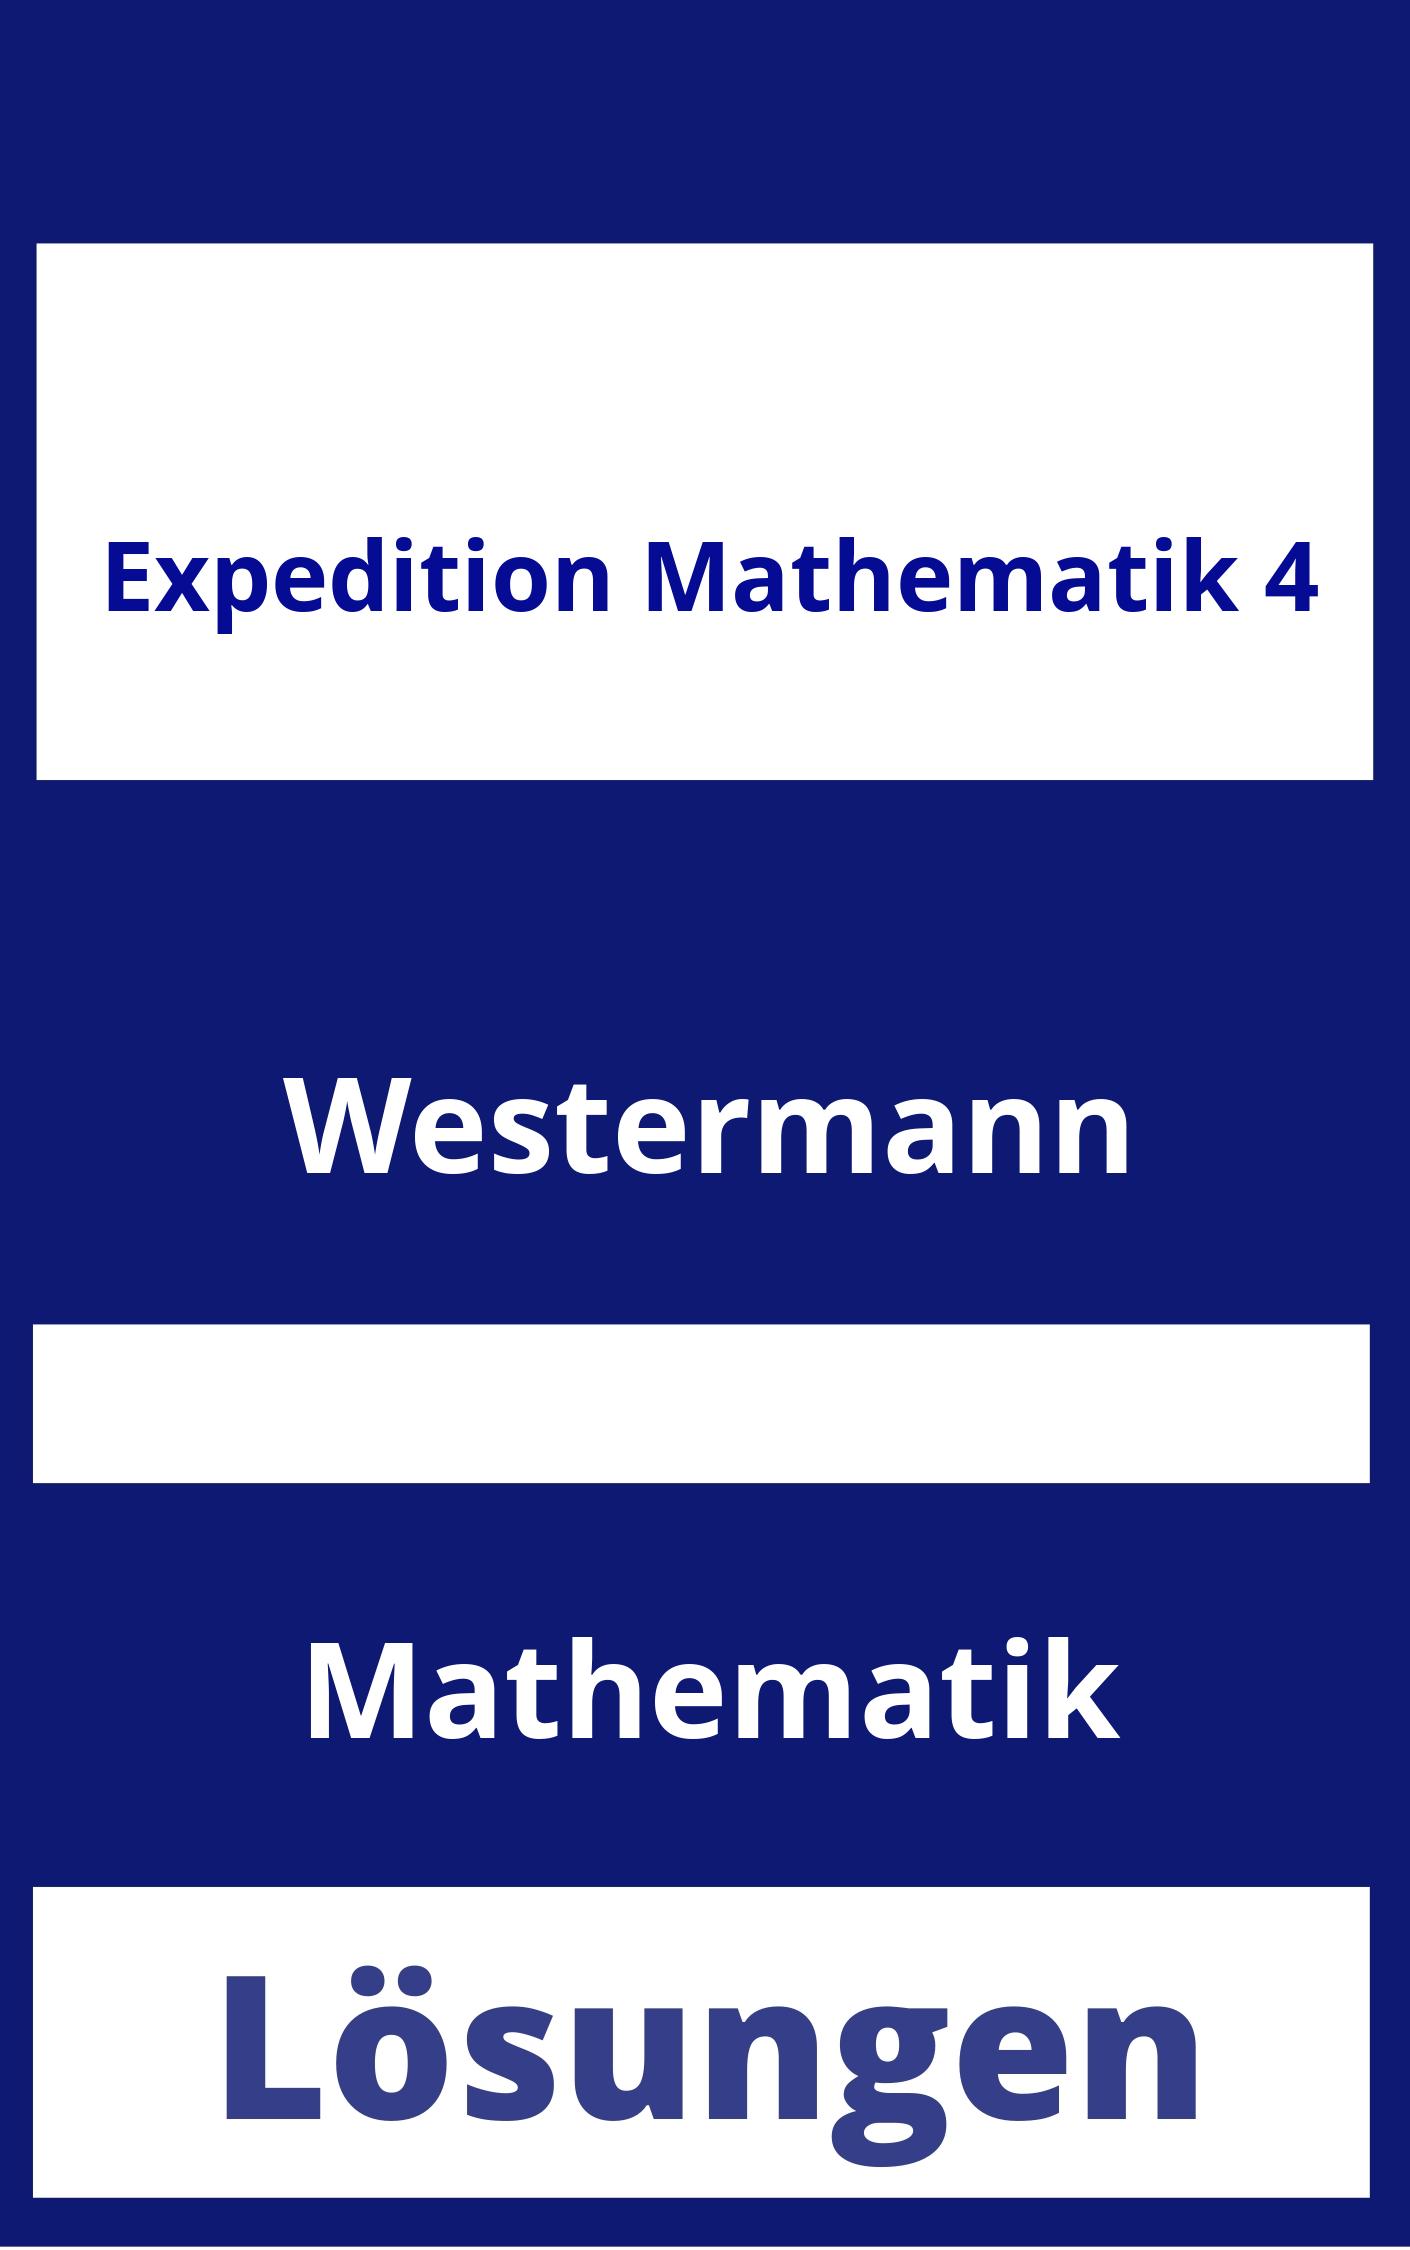 Expedition Mathematik 4